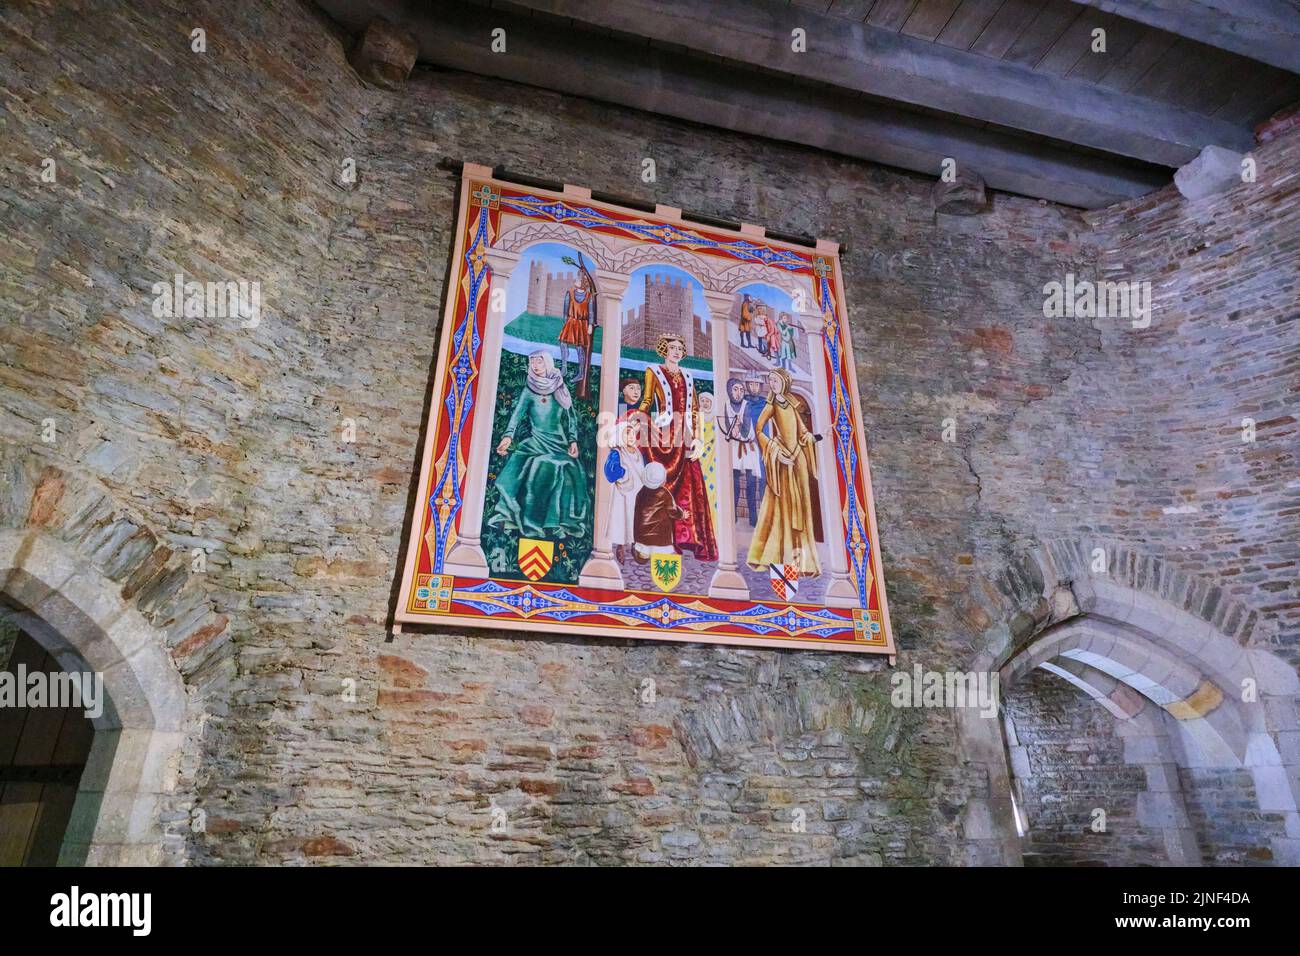 Tapisserie murale suspendue, textile représentant une famille royale. Au château de Caerphilly à Caerphilly, Royaume-Uni. Banque D'Images